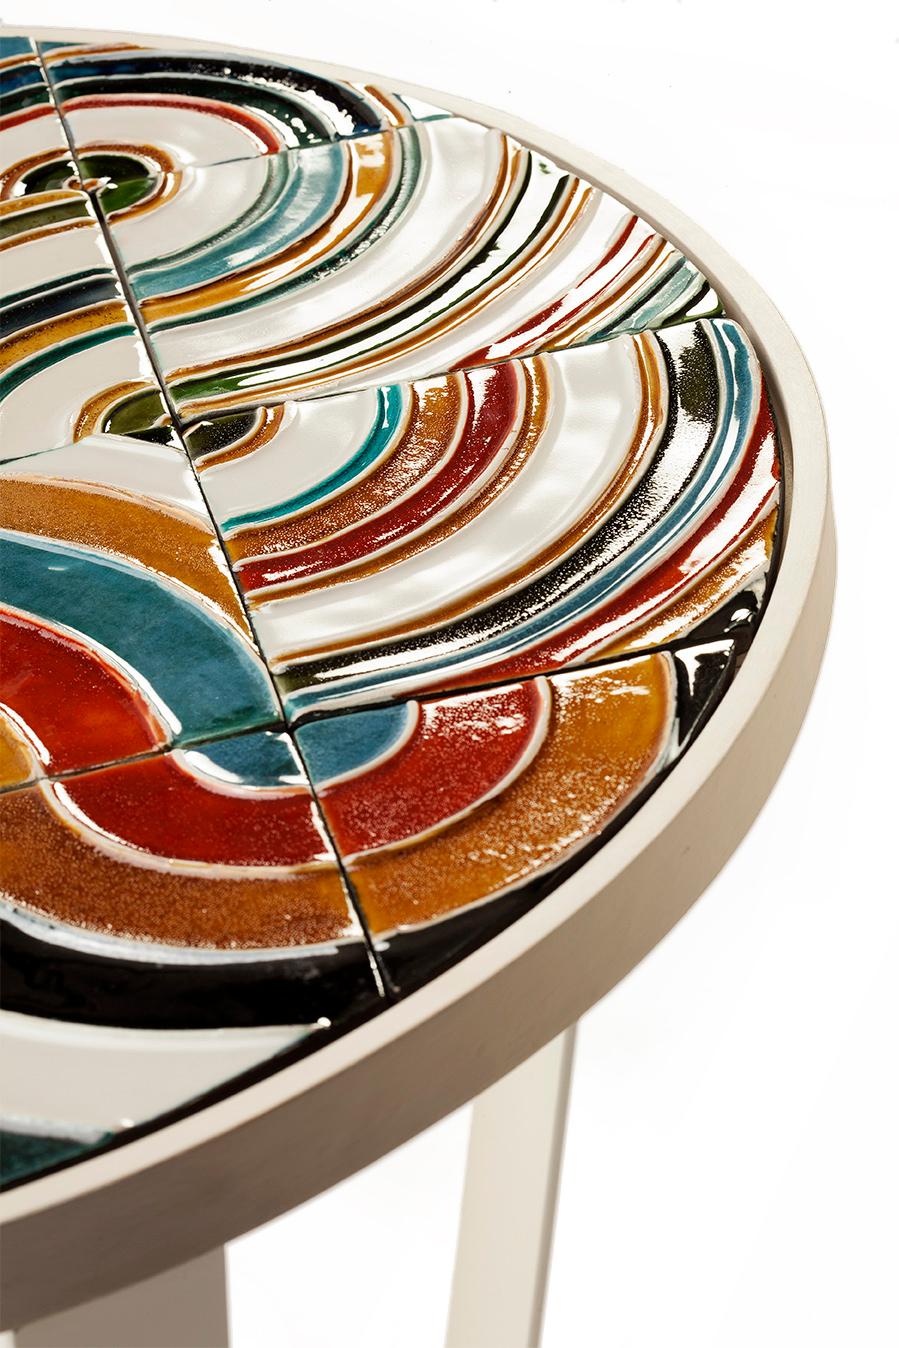 Die portugiesische Kachelproduktion, die für ihre Keramiktradition bekannt ist, geht auf das 16. Jahrhundert zurück.
In Anlehnung an dieses reiche handwerkliche Wissen werden die Tischplatten der Caldas-Tische aus handgefertigten Keramikfliesen in